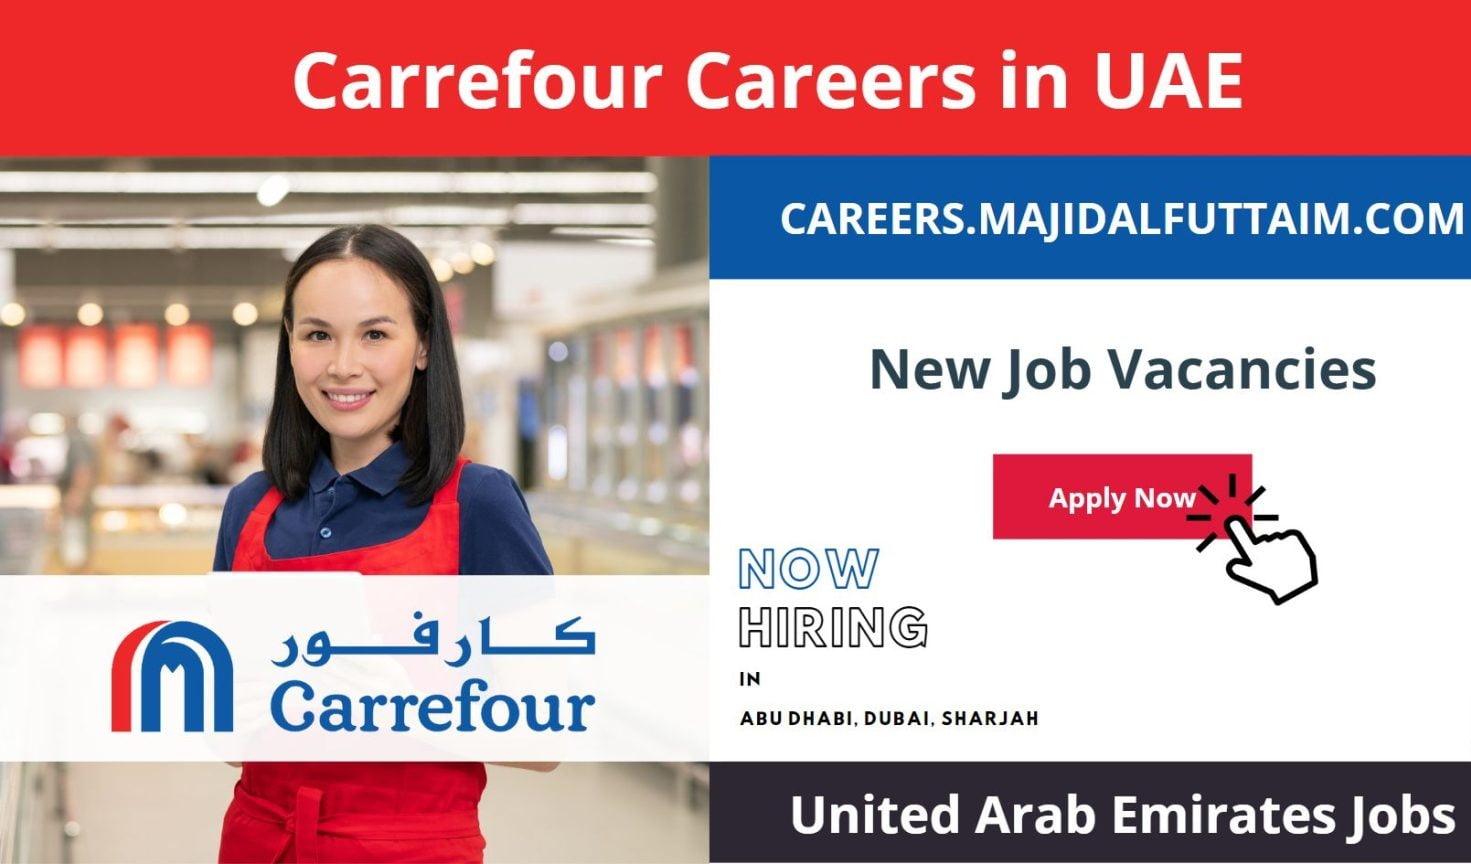 Carrefour Careers in UAE 2023 New Job Openings